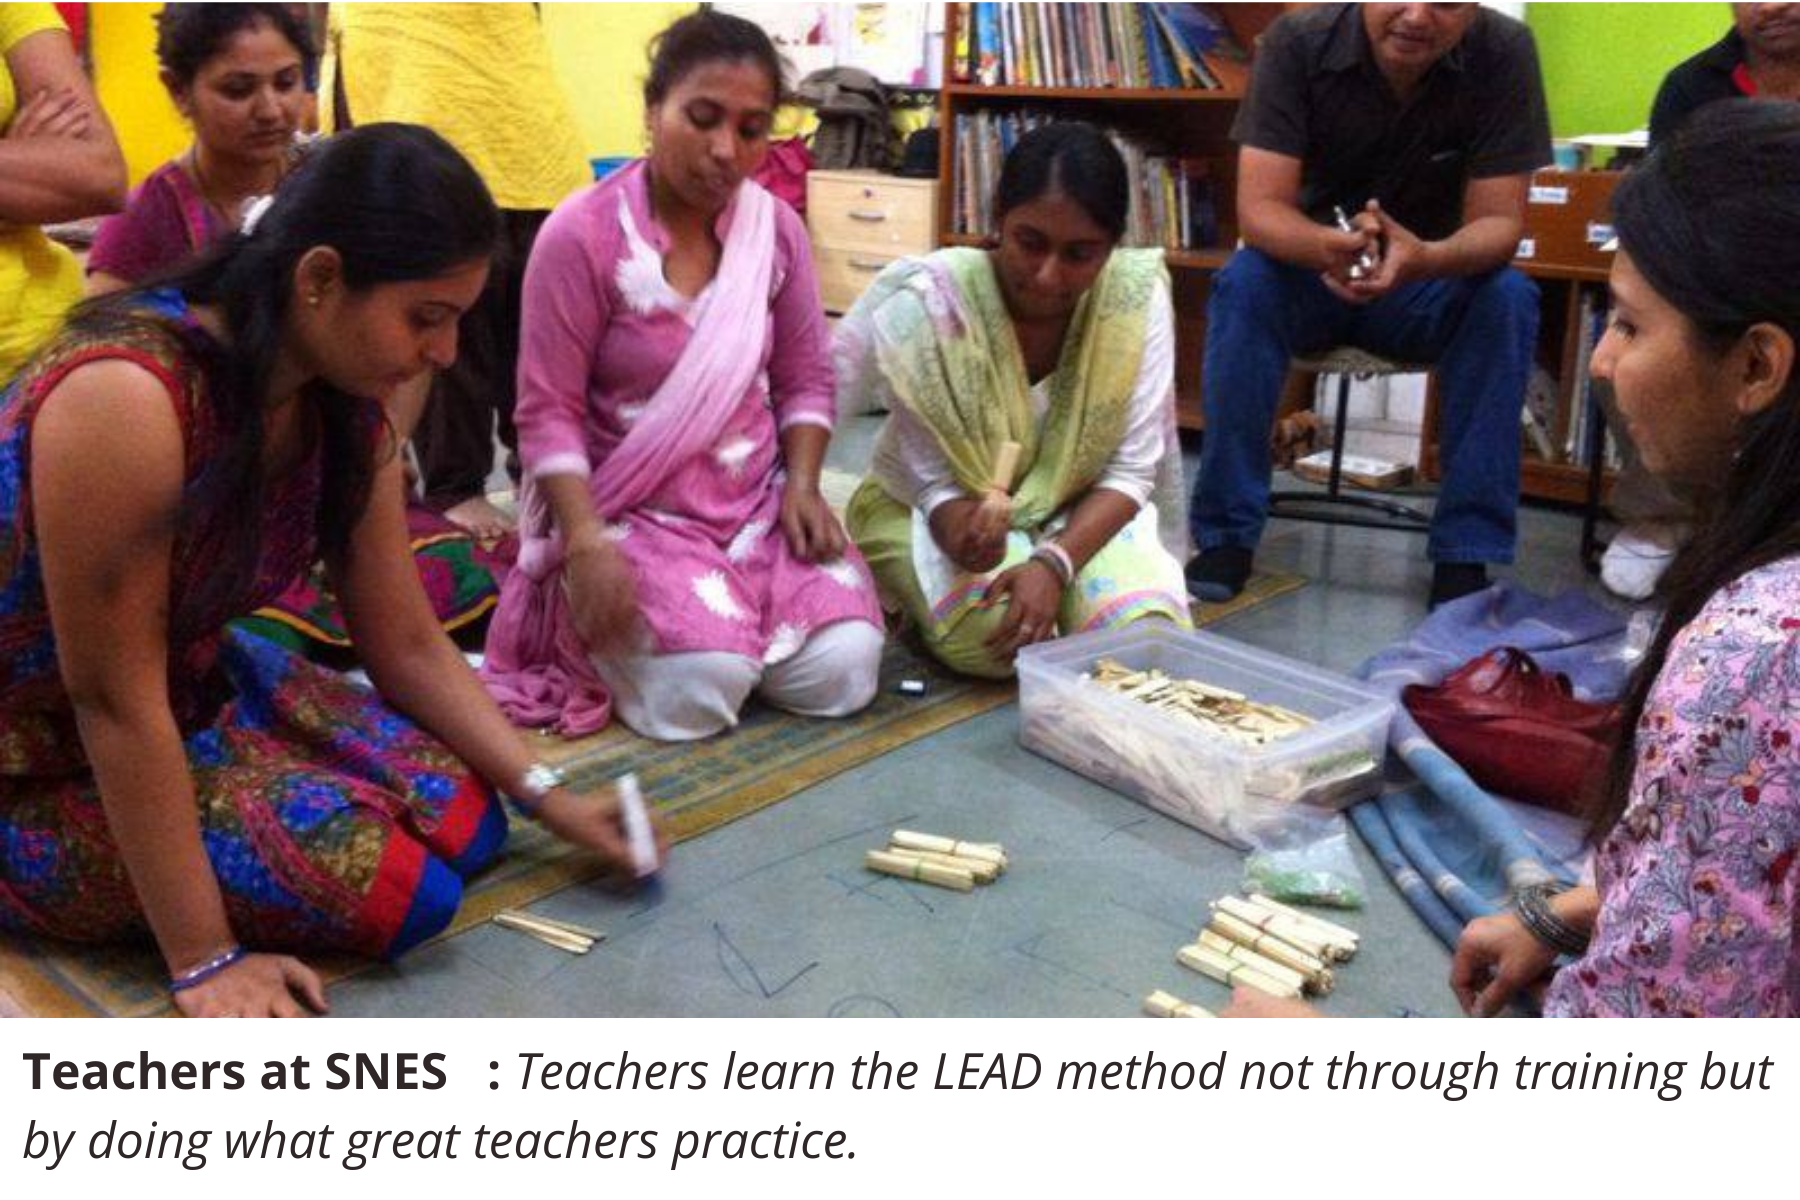 Image 2 _ Teachers learning the LEAD Method